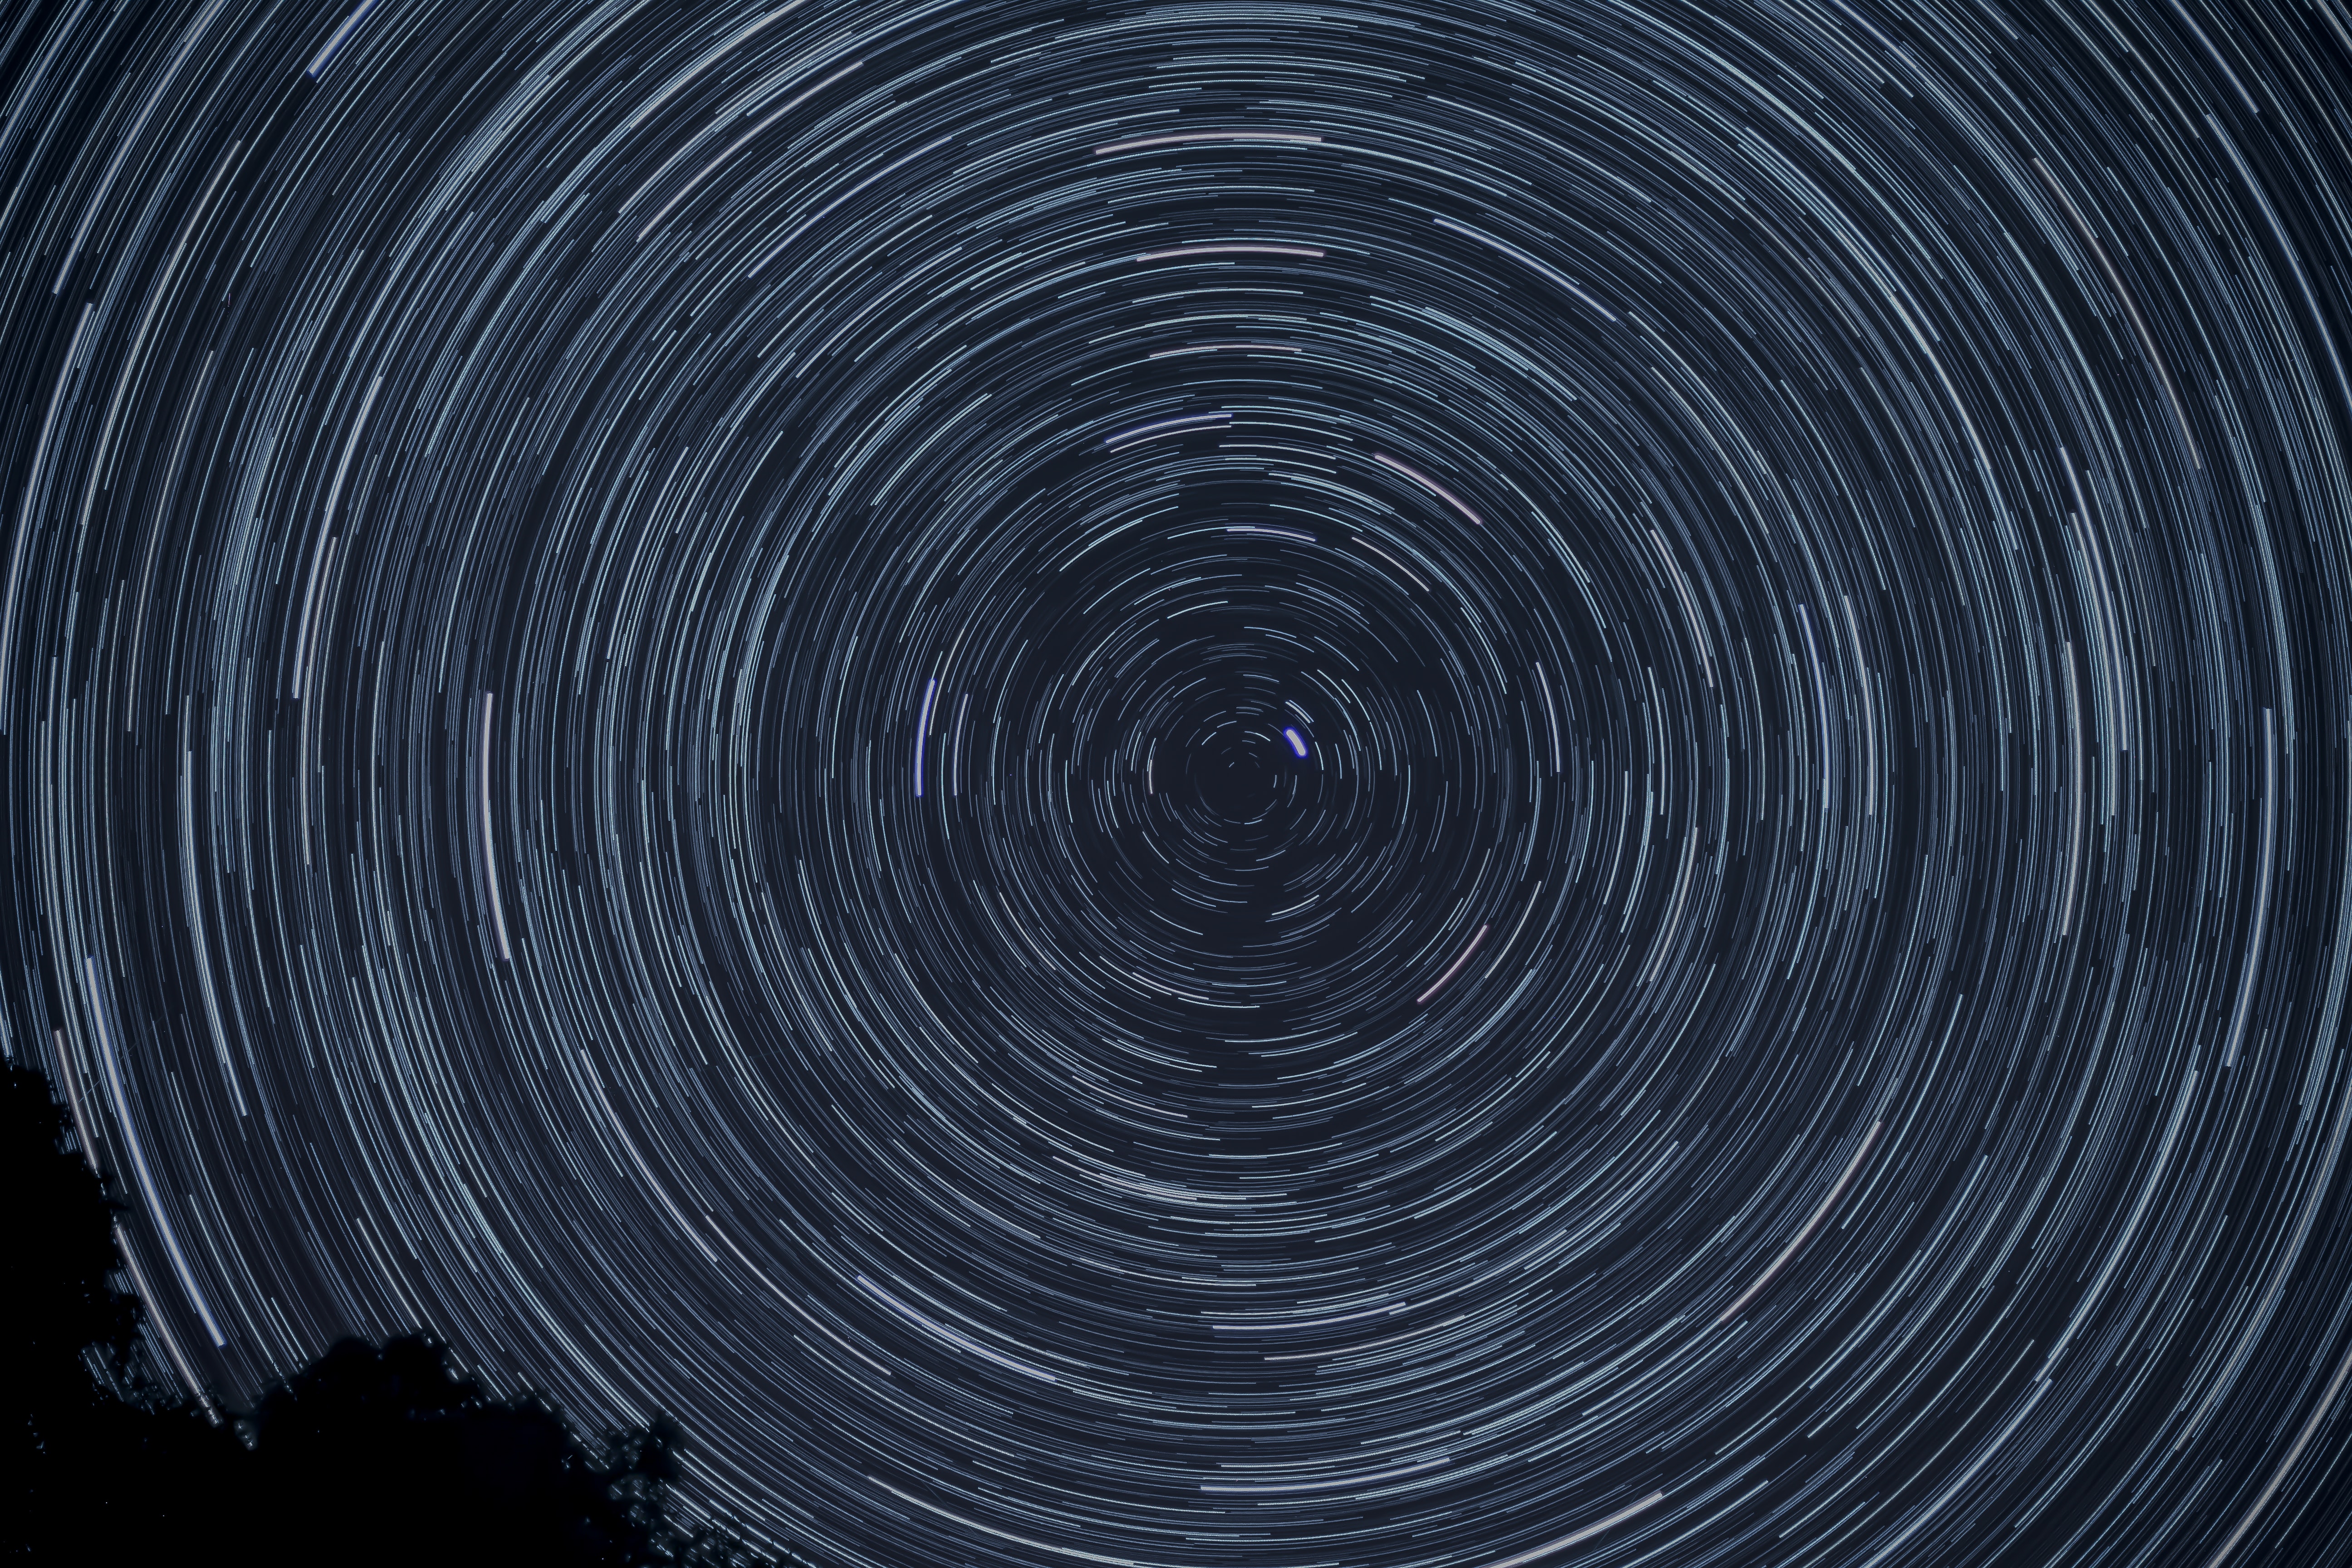 star trails fond d'écran,ciel,cercle,spirale,espace,vortex